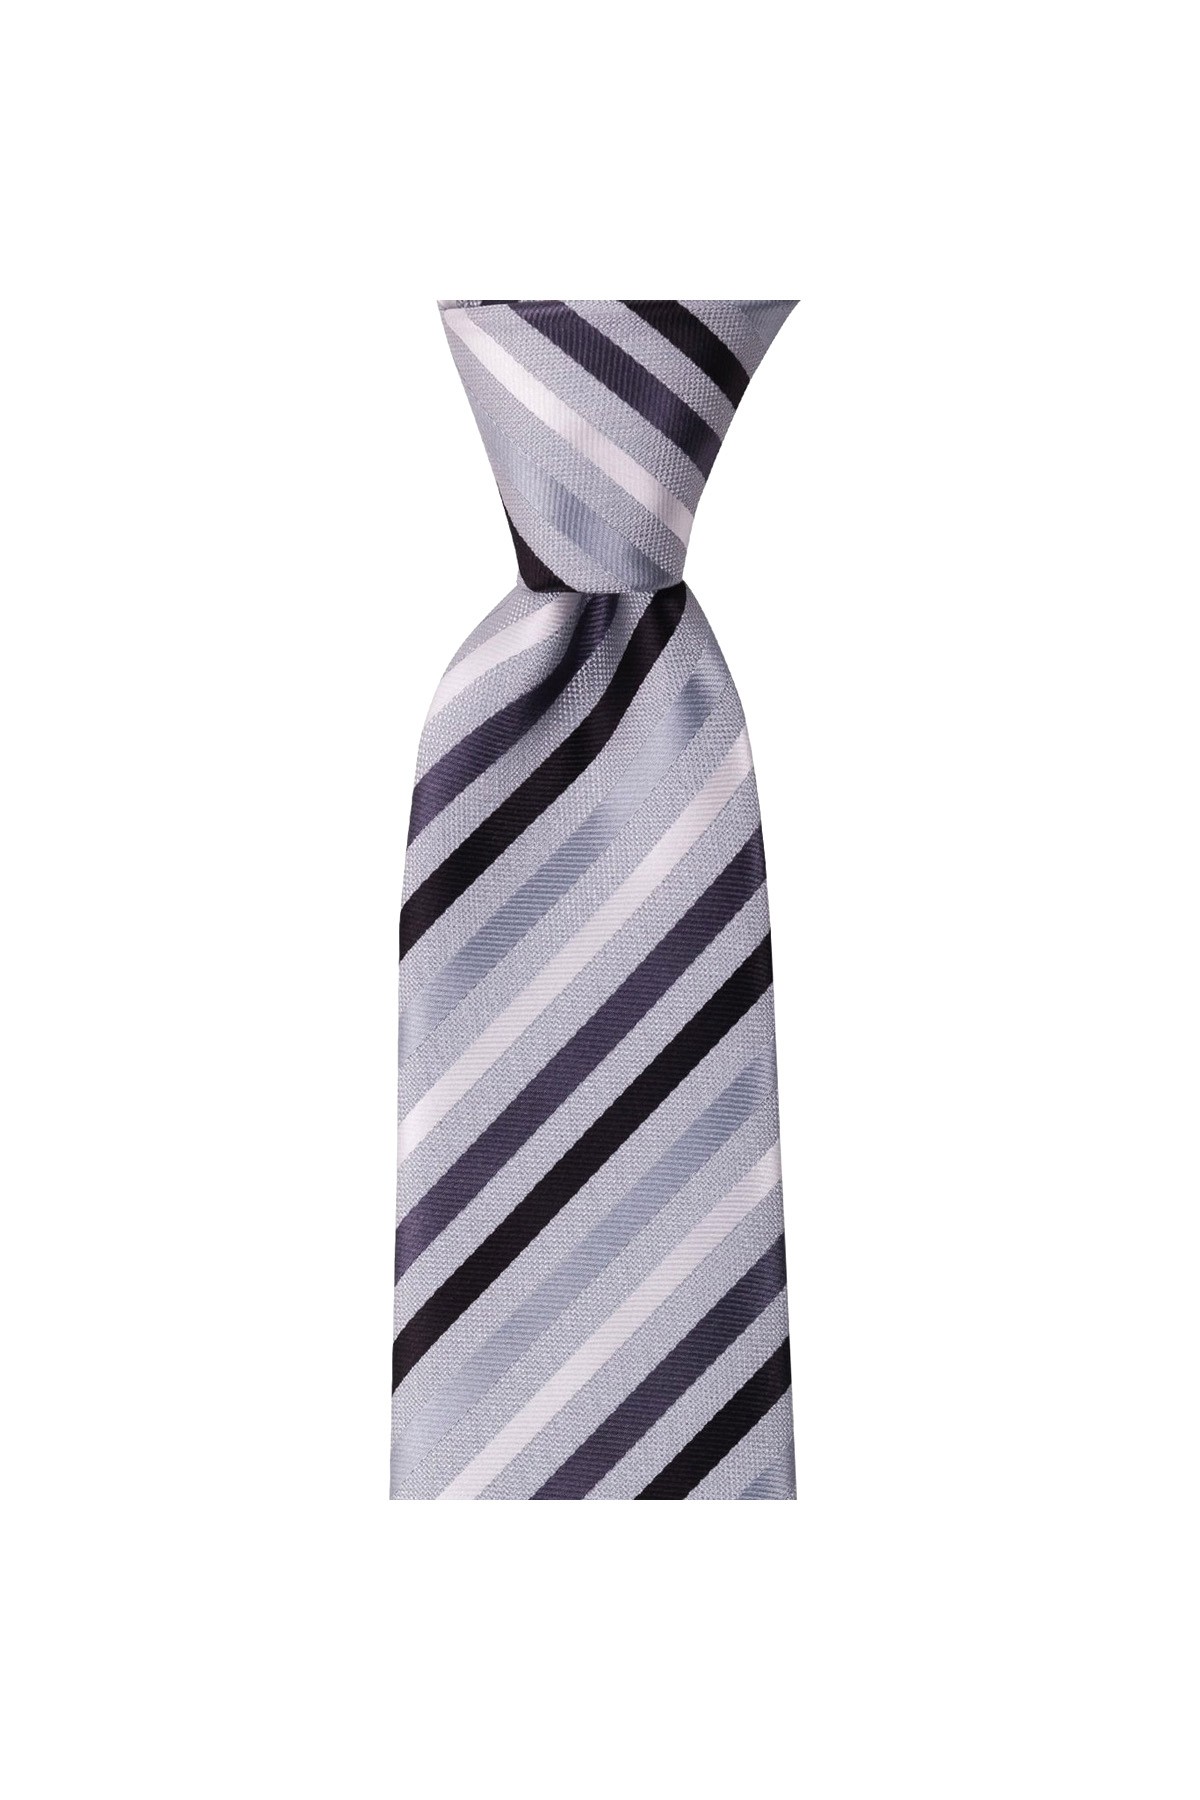 Çok çizgili 8 cm genişliğinde klasik kravat - Açık gri